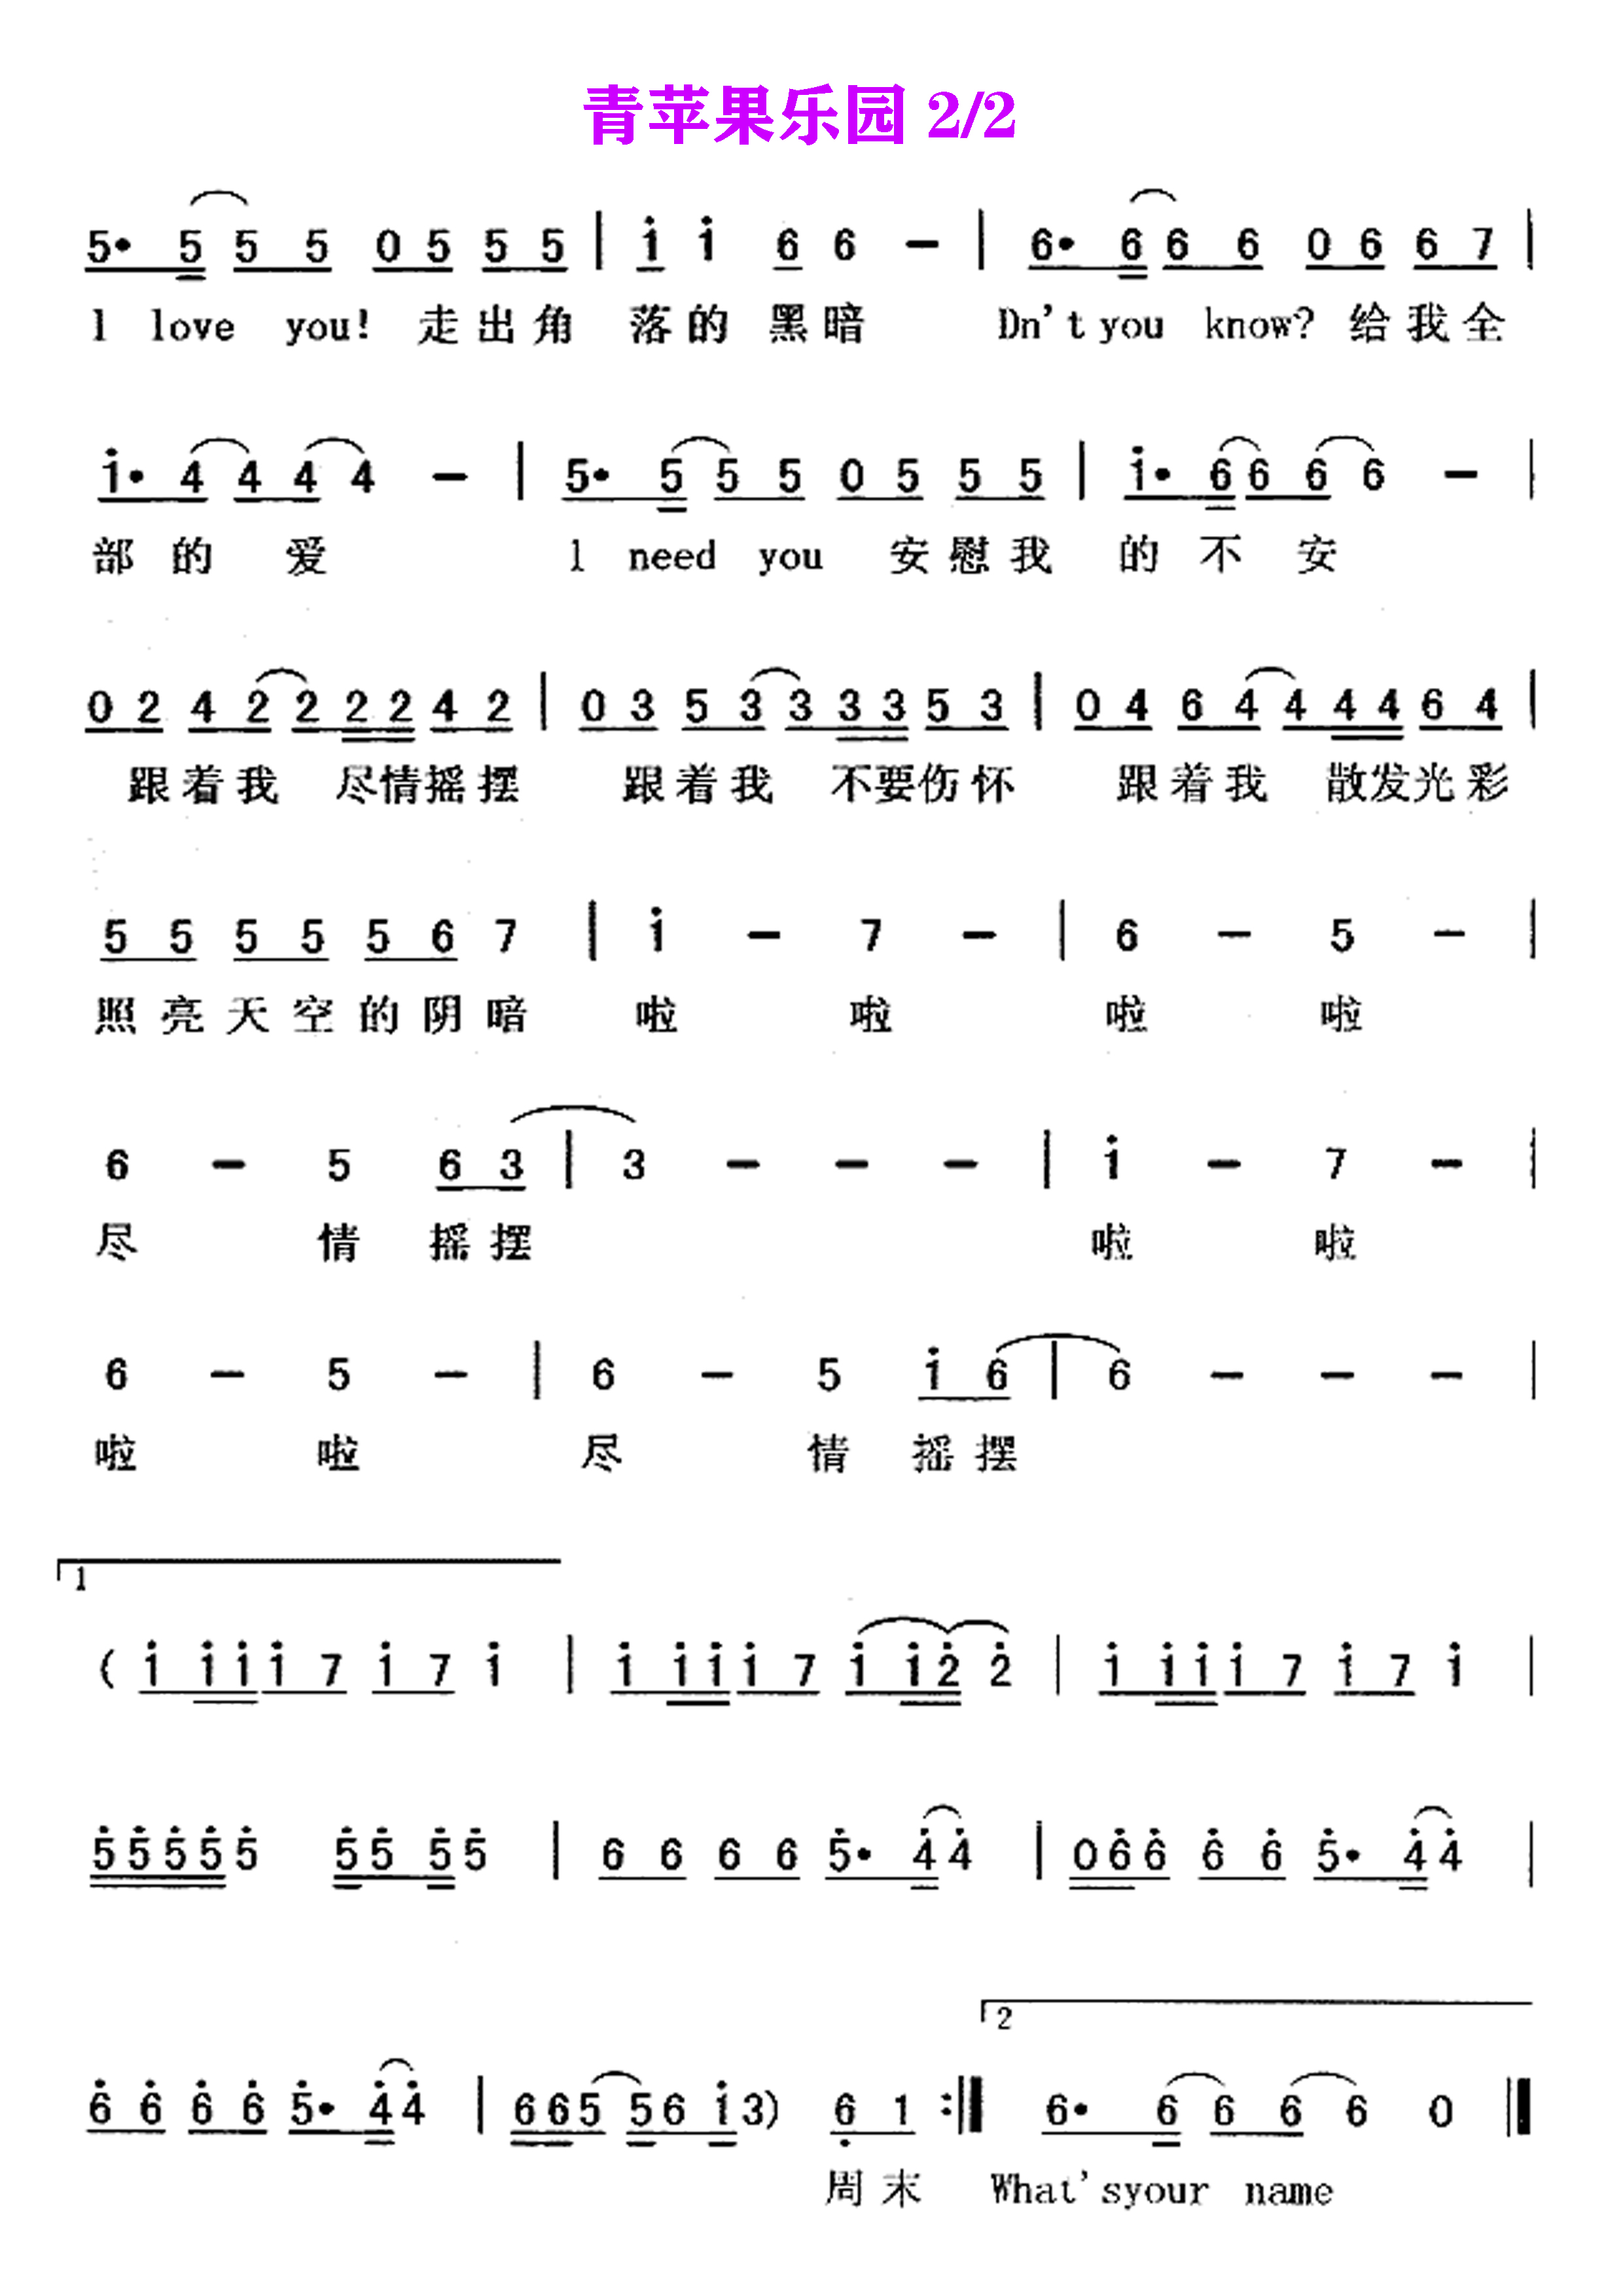 青苹果乐园-简单版-小虎队双手简谱预览2-钢琴谱文件（五线谱、双手简谱、数字谱、Midi、PDF）免费下载